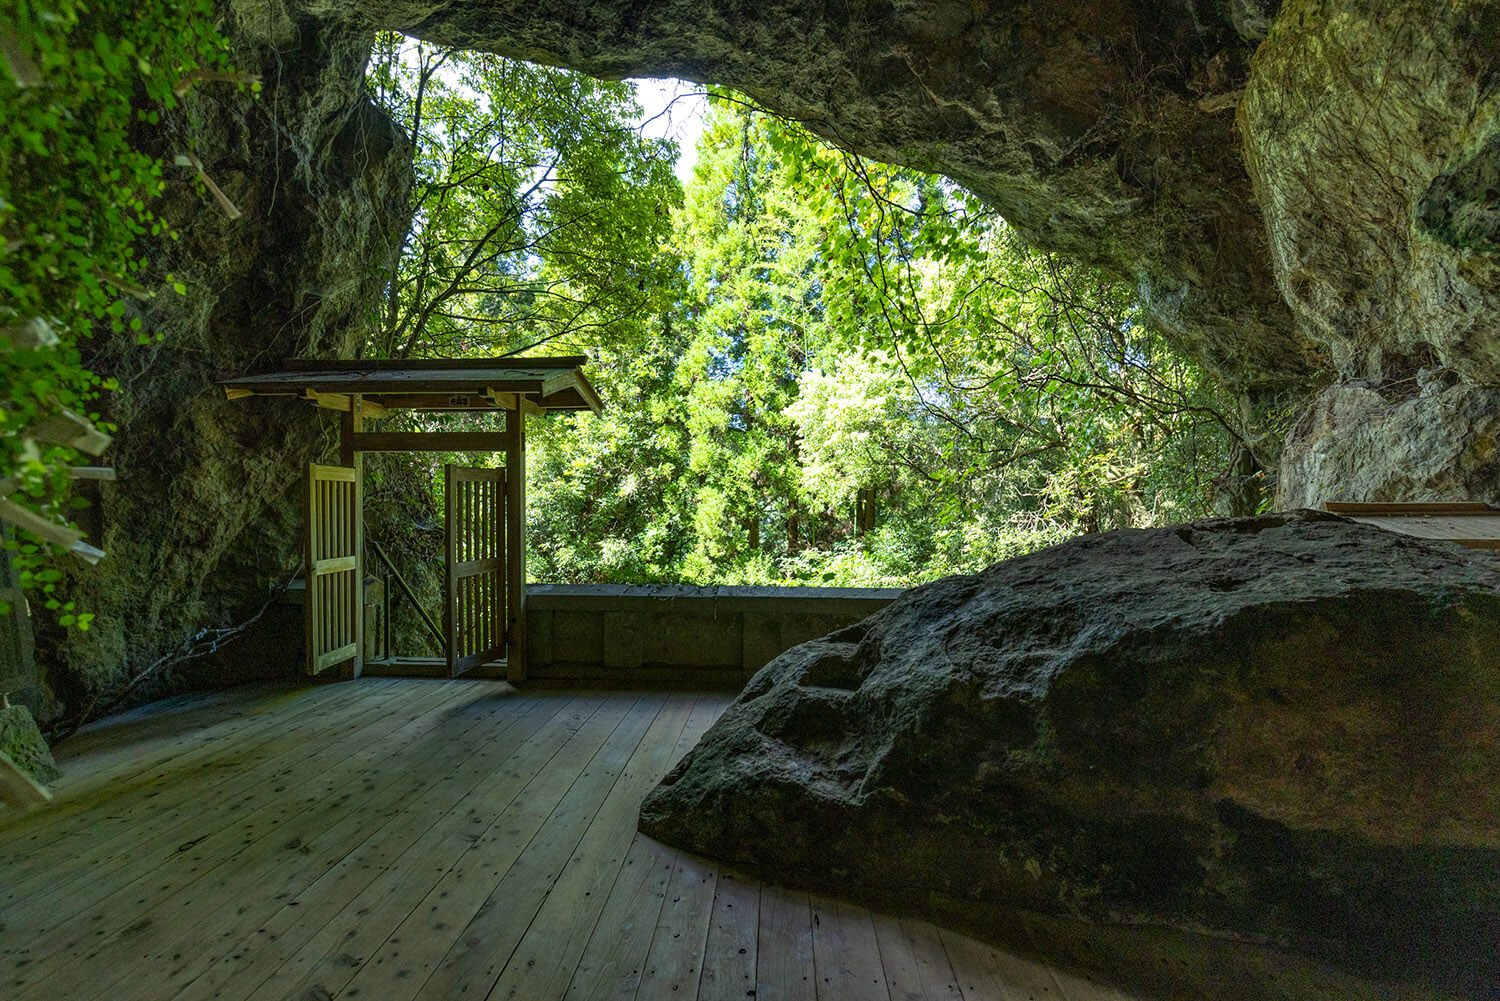 洞窟内からの眺め。宮本武蔵も同じ風景を見ていたと思うと感慨深い